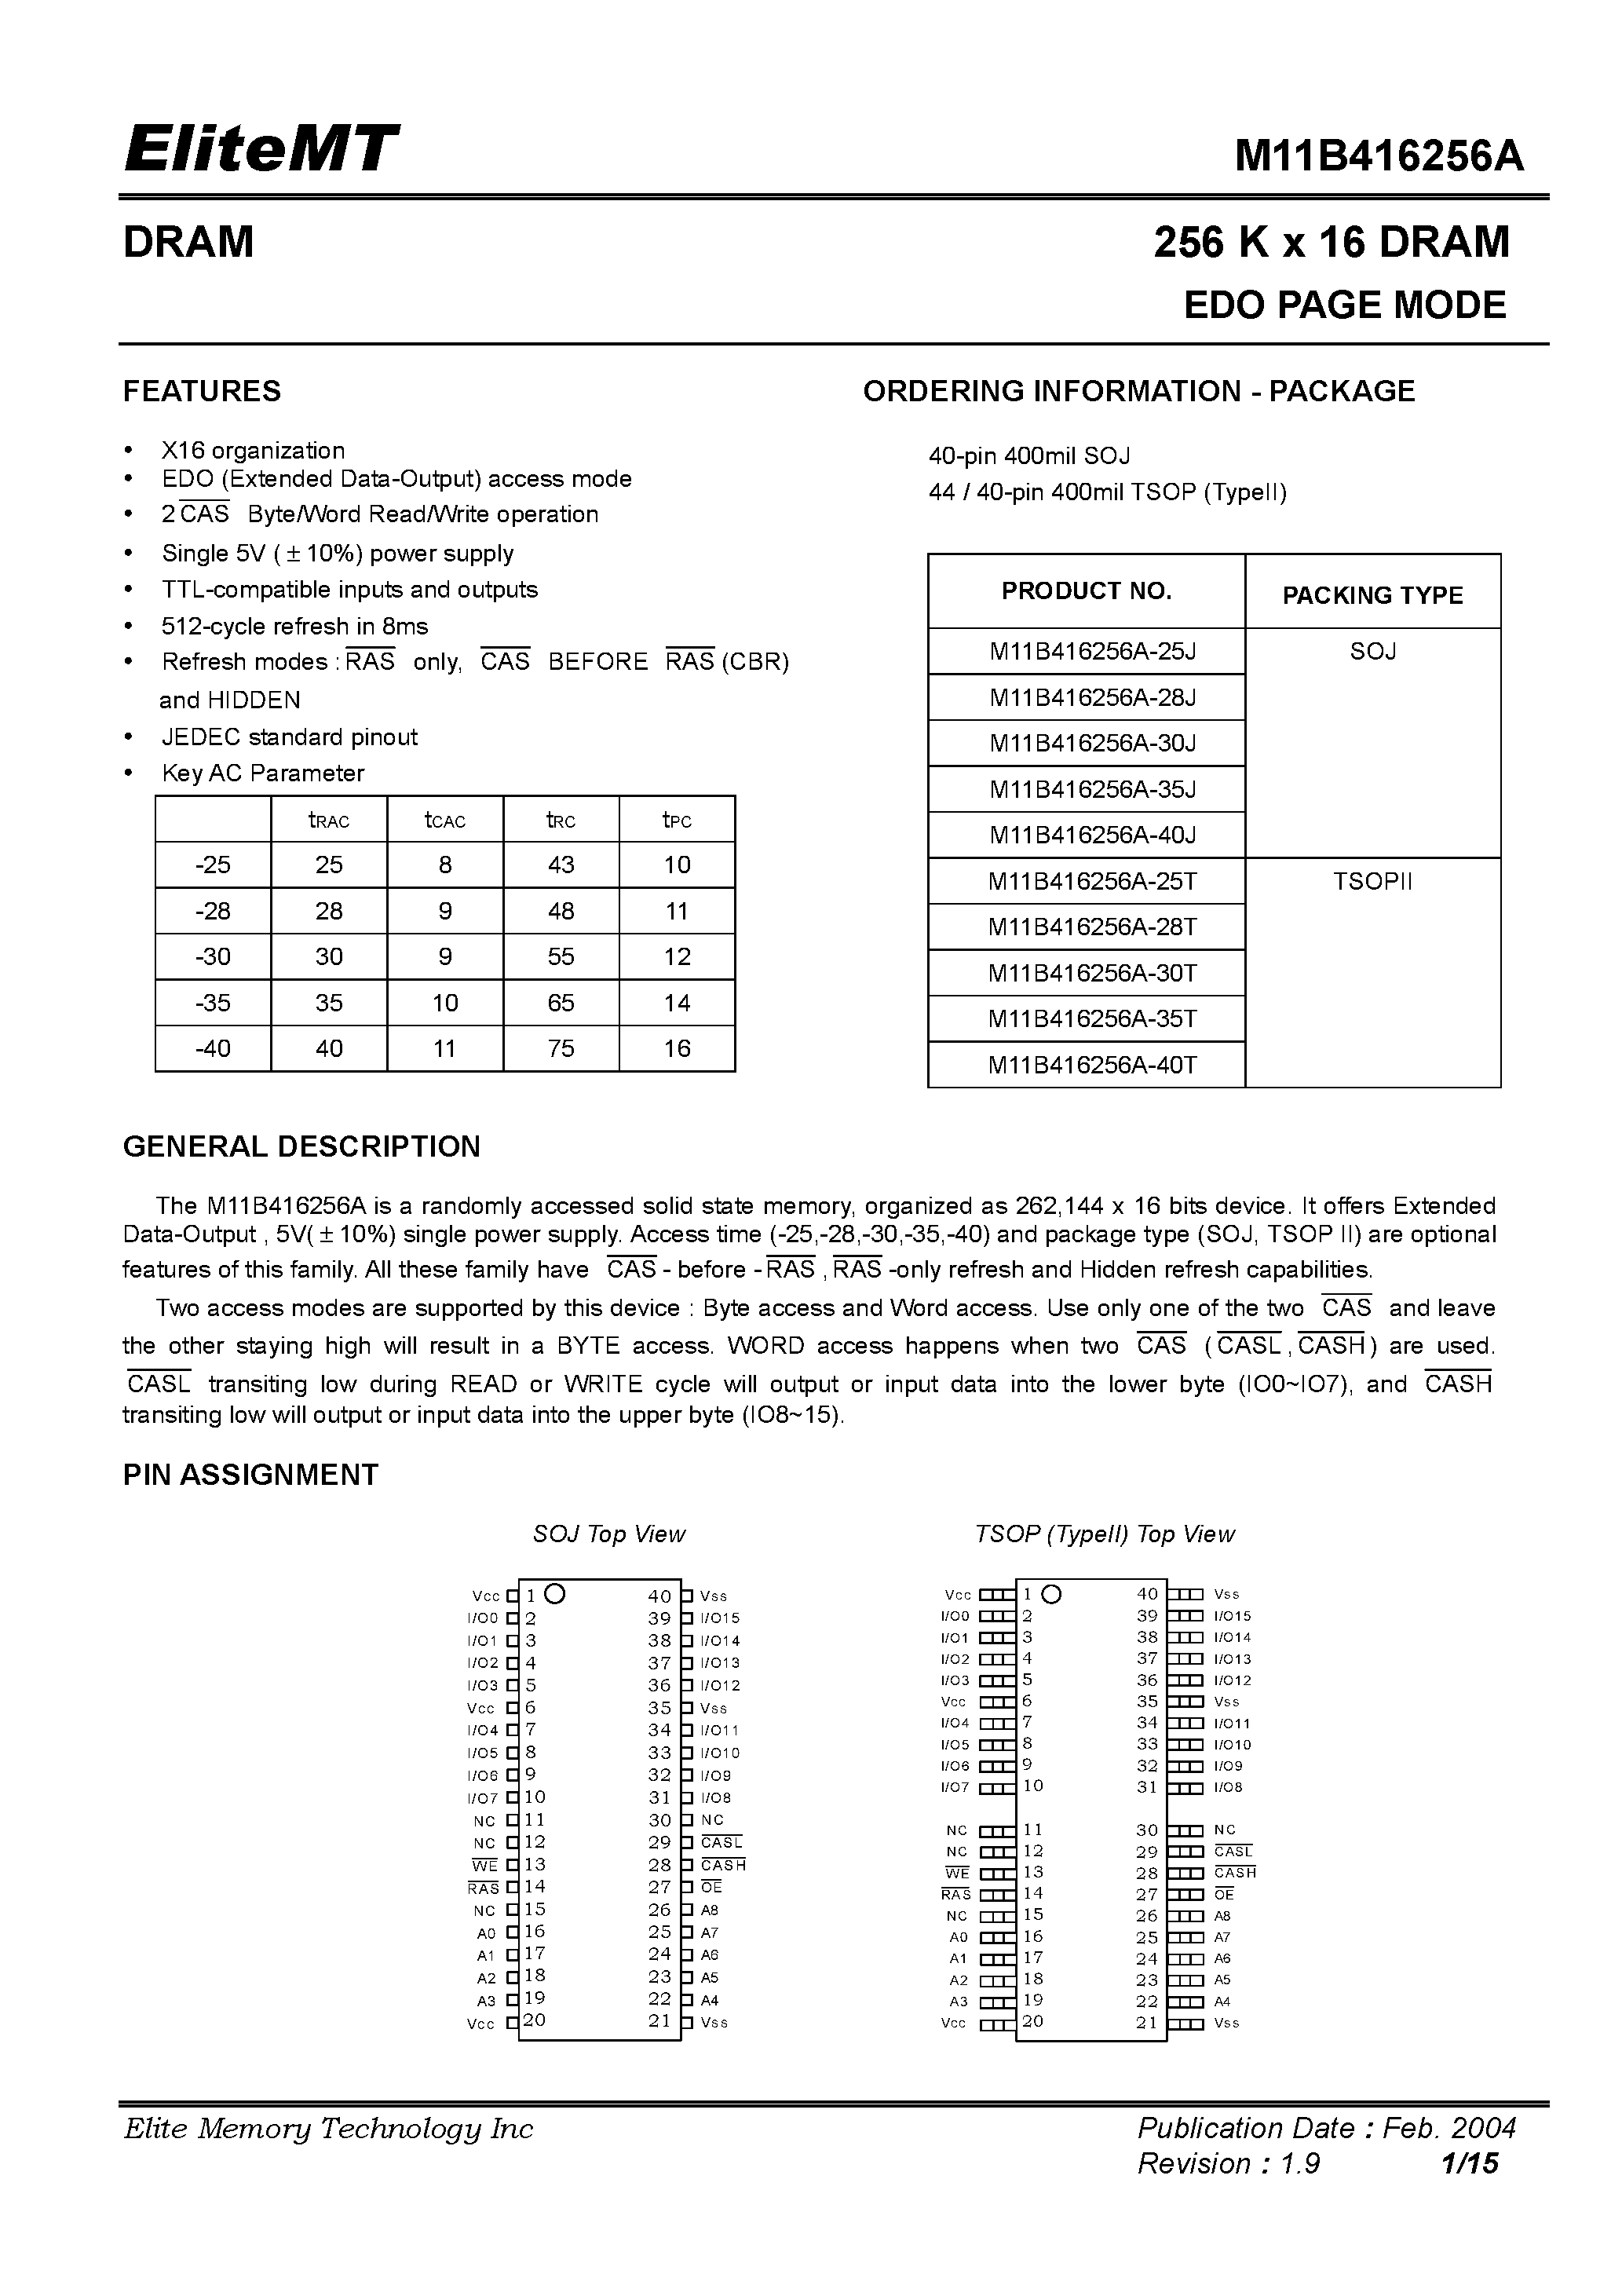 Datasheet M11B416256A-30J - 256 K x 16 DRAM EDO PAGE MODE page 1